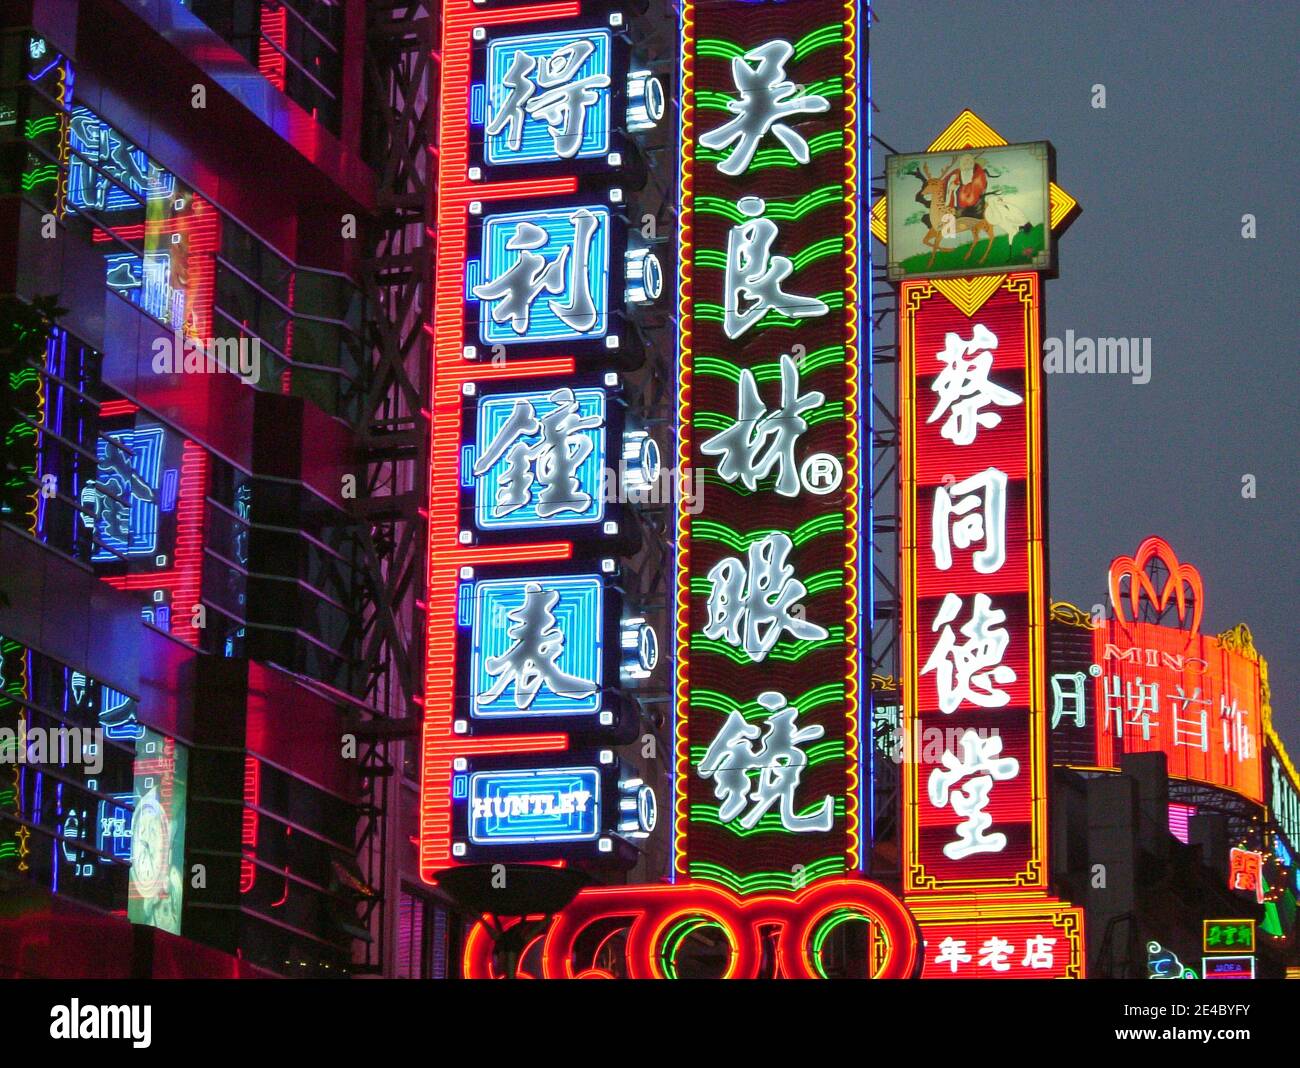 Luci pubblicitarie al neon al crepuscolo, Nanjing Road, distretto di Huangpu, Shanghai, Repubblica popolare Cinese Foto Stock